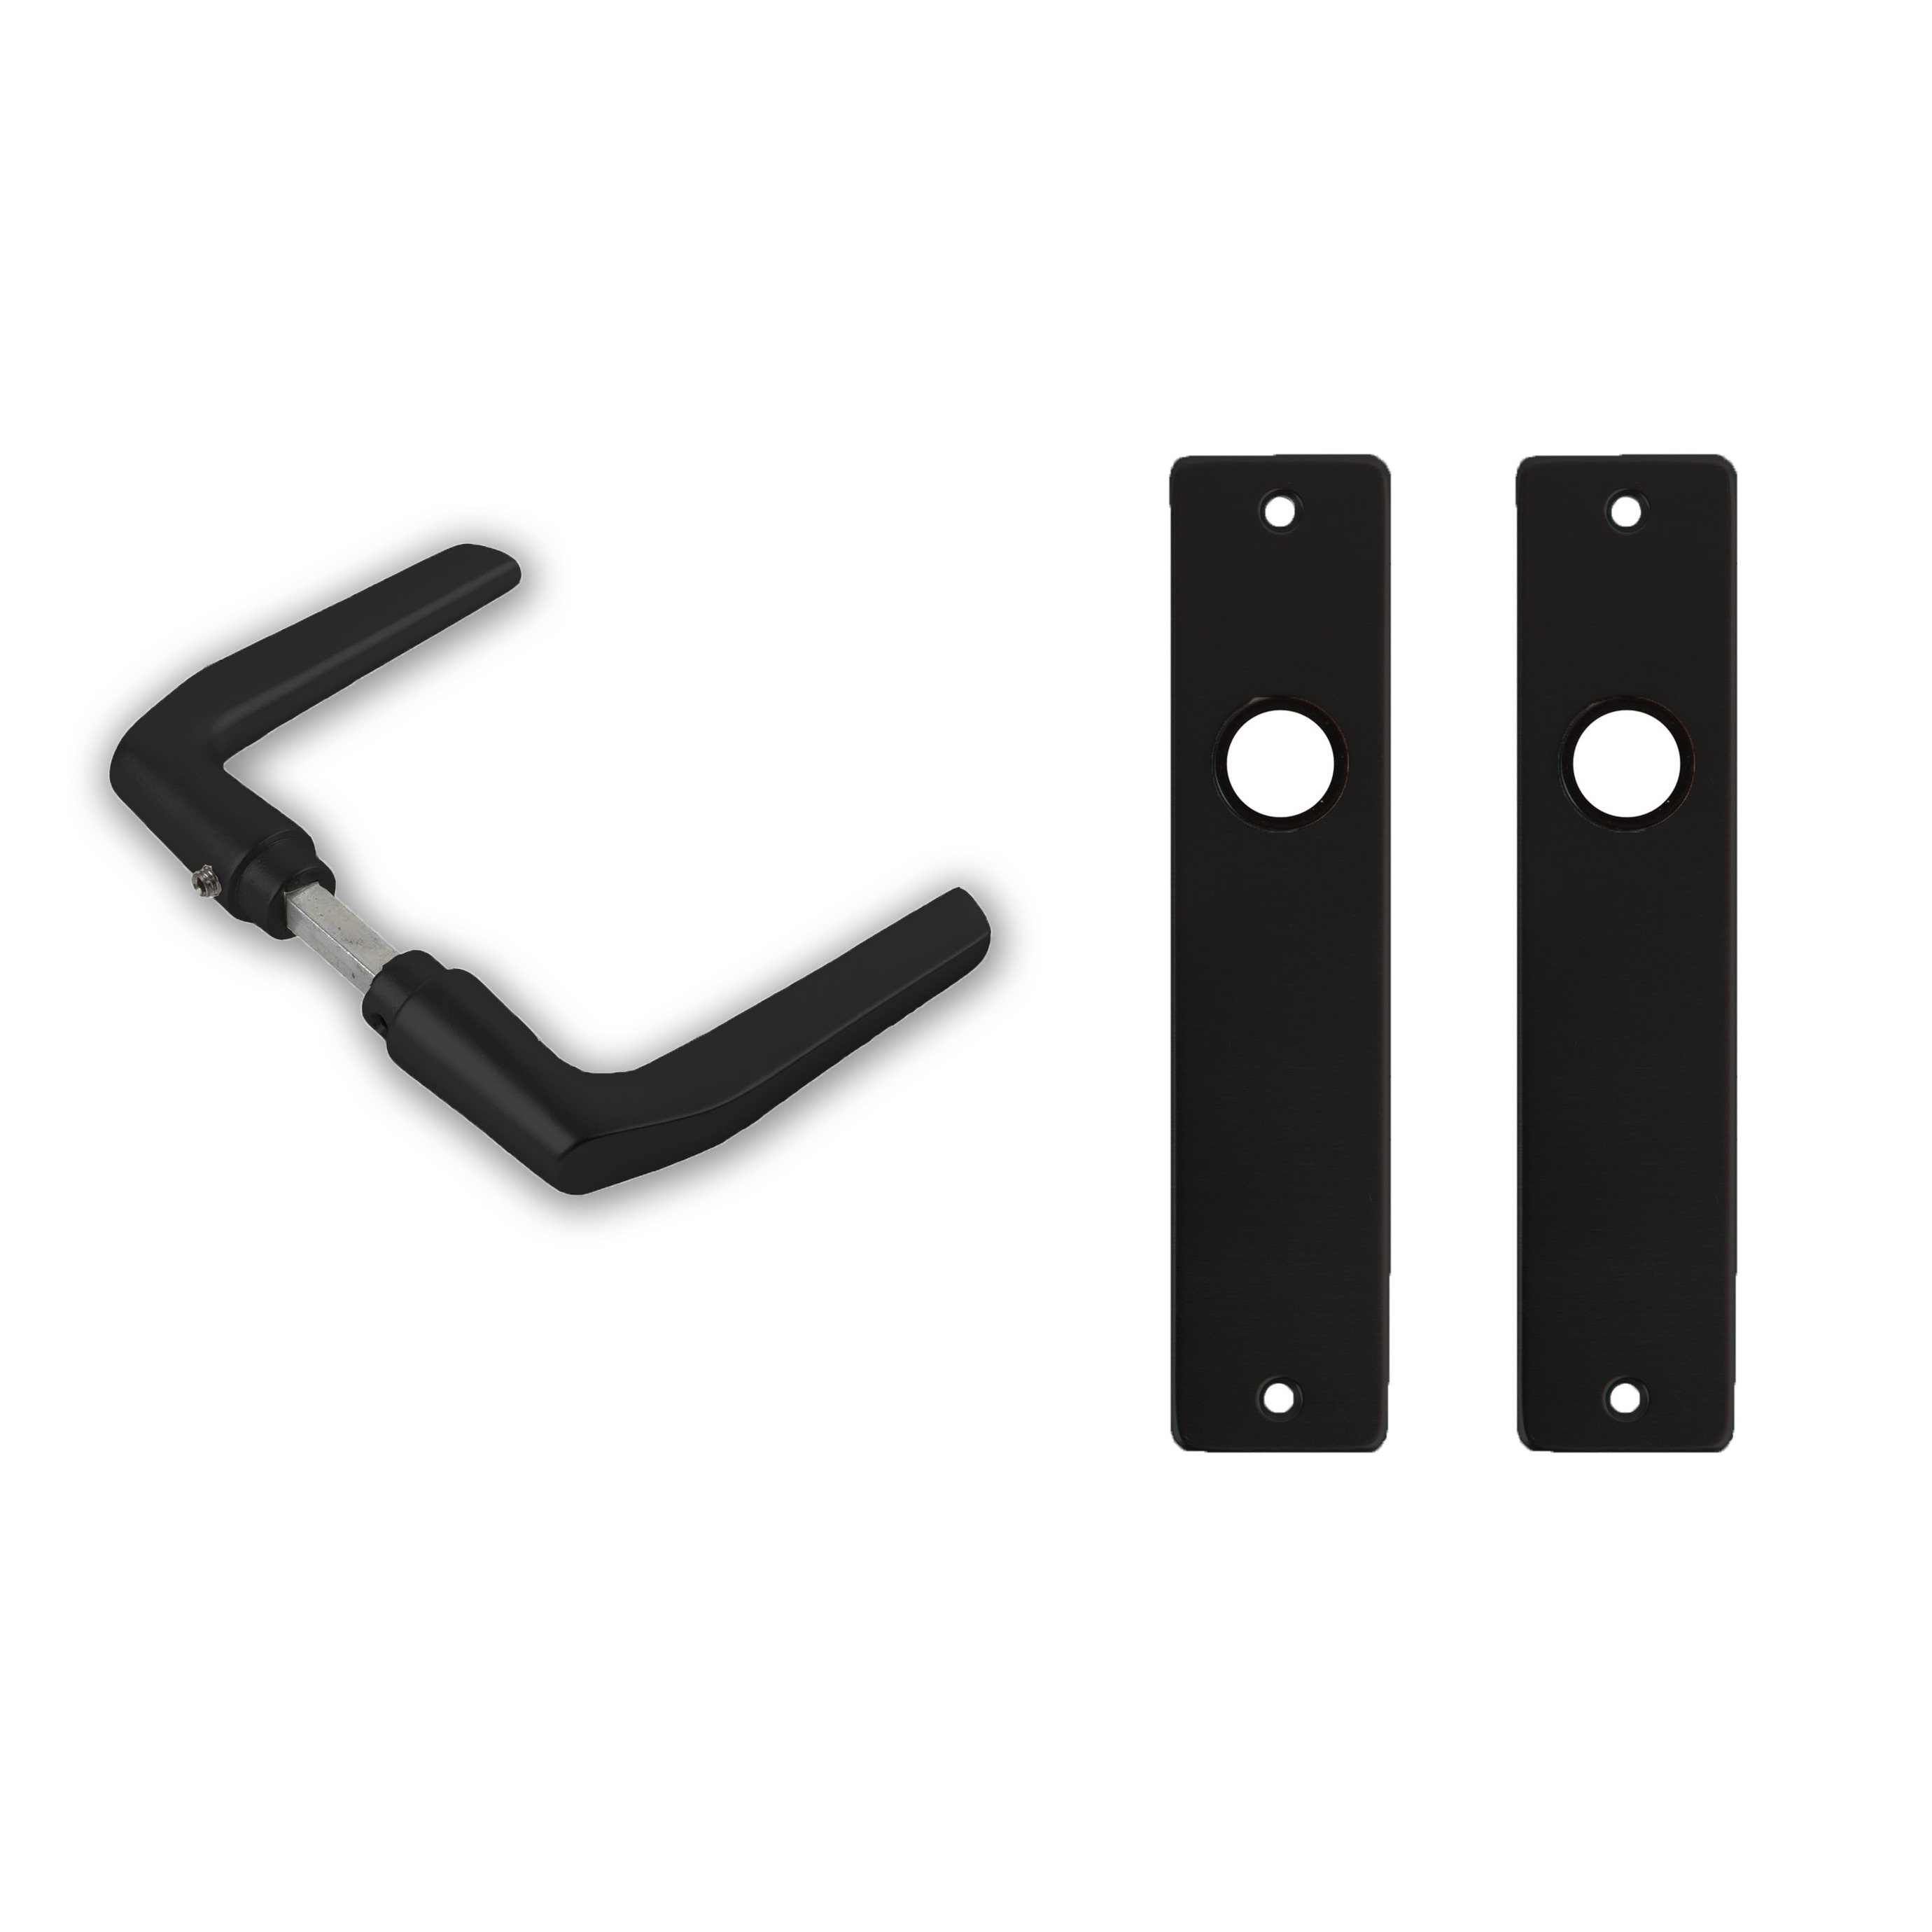 3x paar deurkrukset-deurgarnituur zwart met zwarte deurklinken en deurschilden